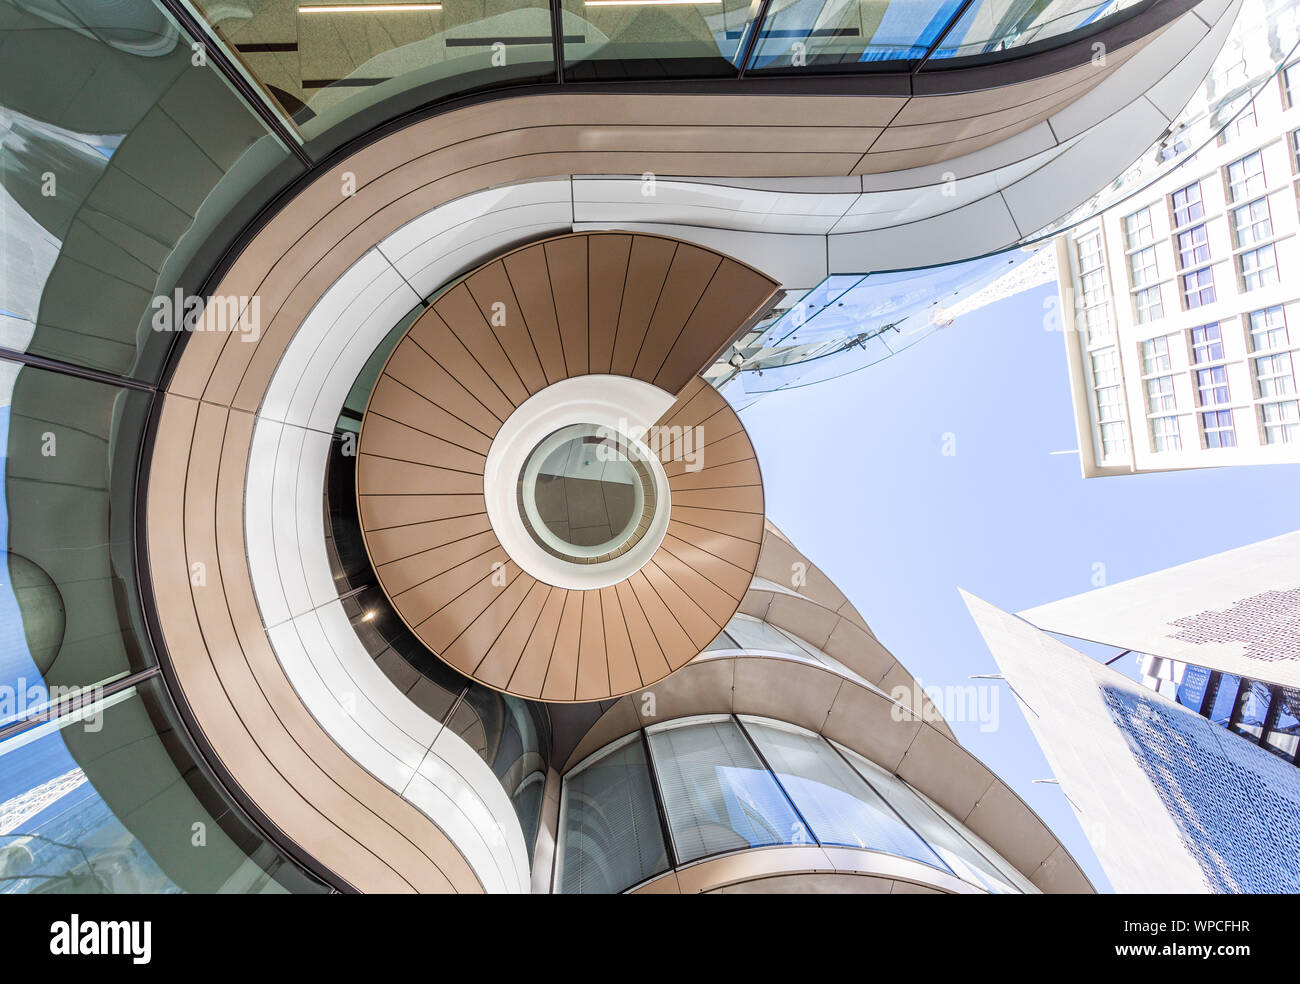 La Universidad de Tecnología de Sydney del nuevo edificio 2 UTS Central. Presentación de imágenes vista exterior de la singular escalera de doble hélice helicoidal Foto de stock